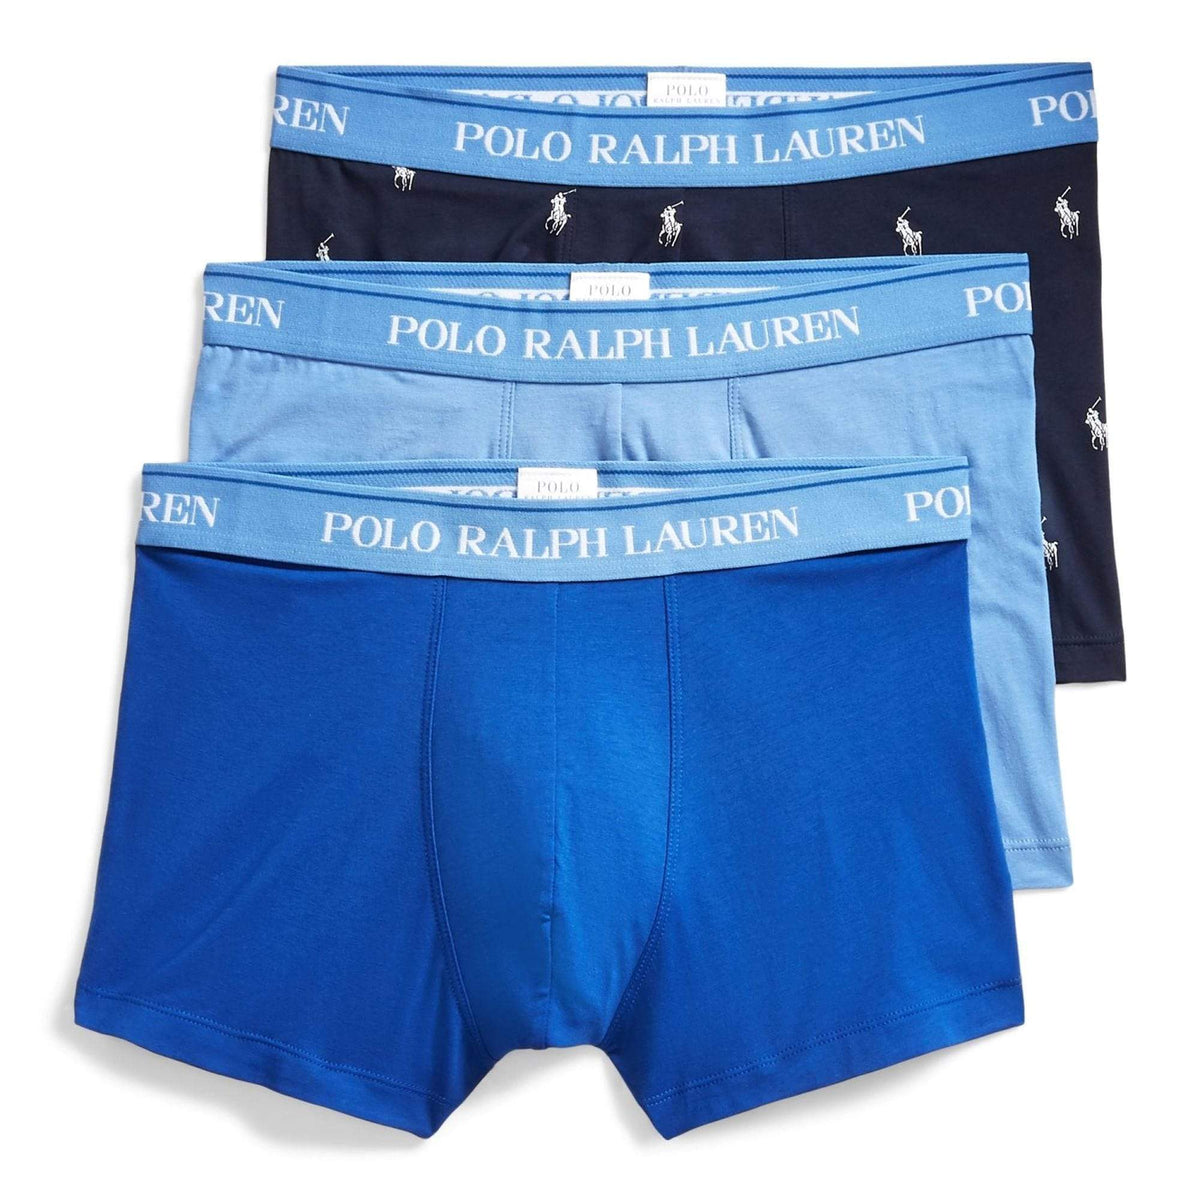 Polo Ralph Lauren - Underwear - Polo Ralph Lauren Stretch Boxer Brief 3-Pack